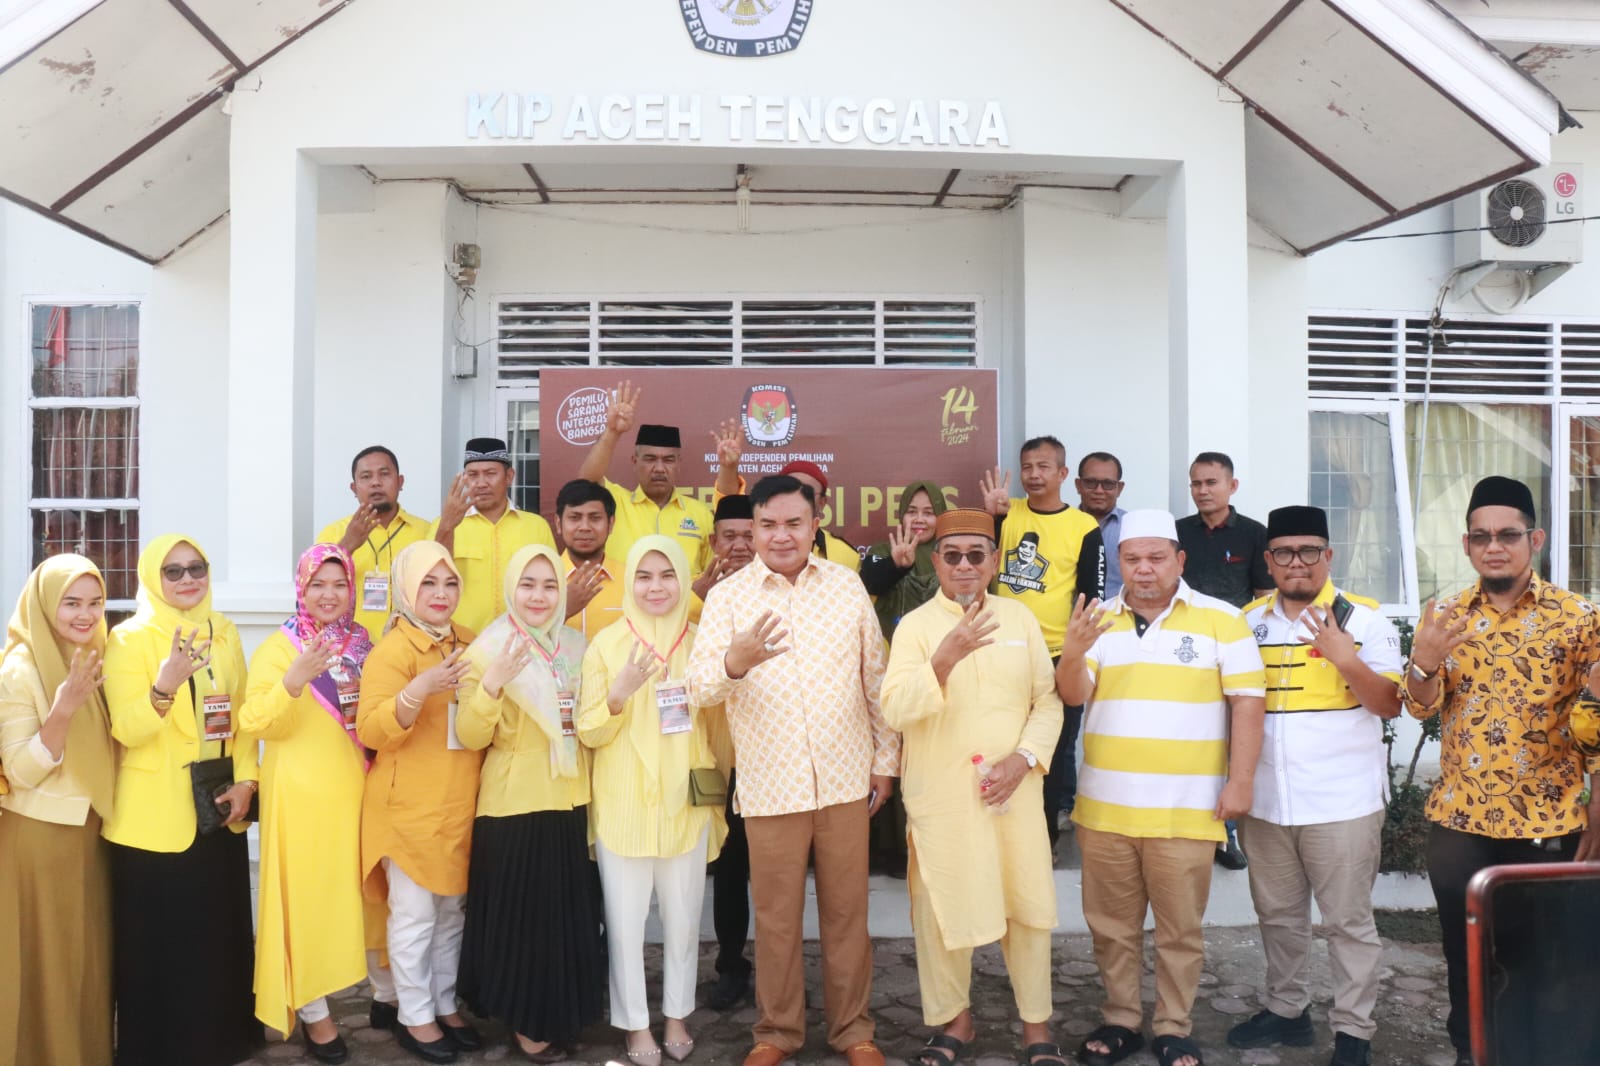 Golkar Daftarkan 30 Nama Bacaleg Ke KIP Aceh Tenggara